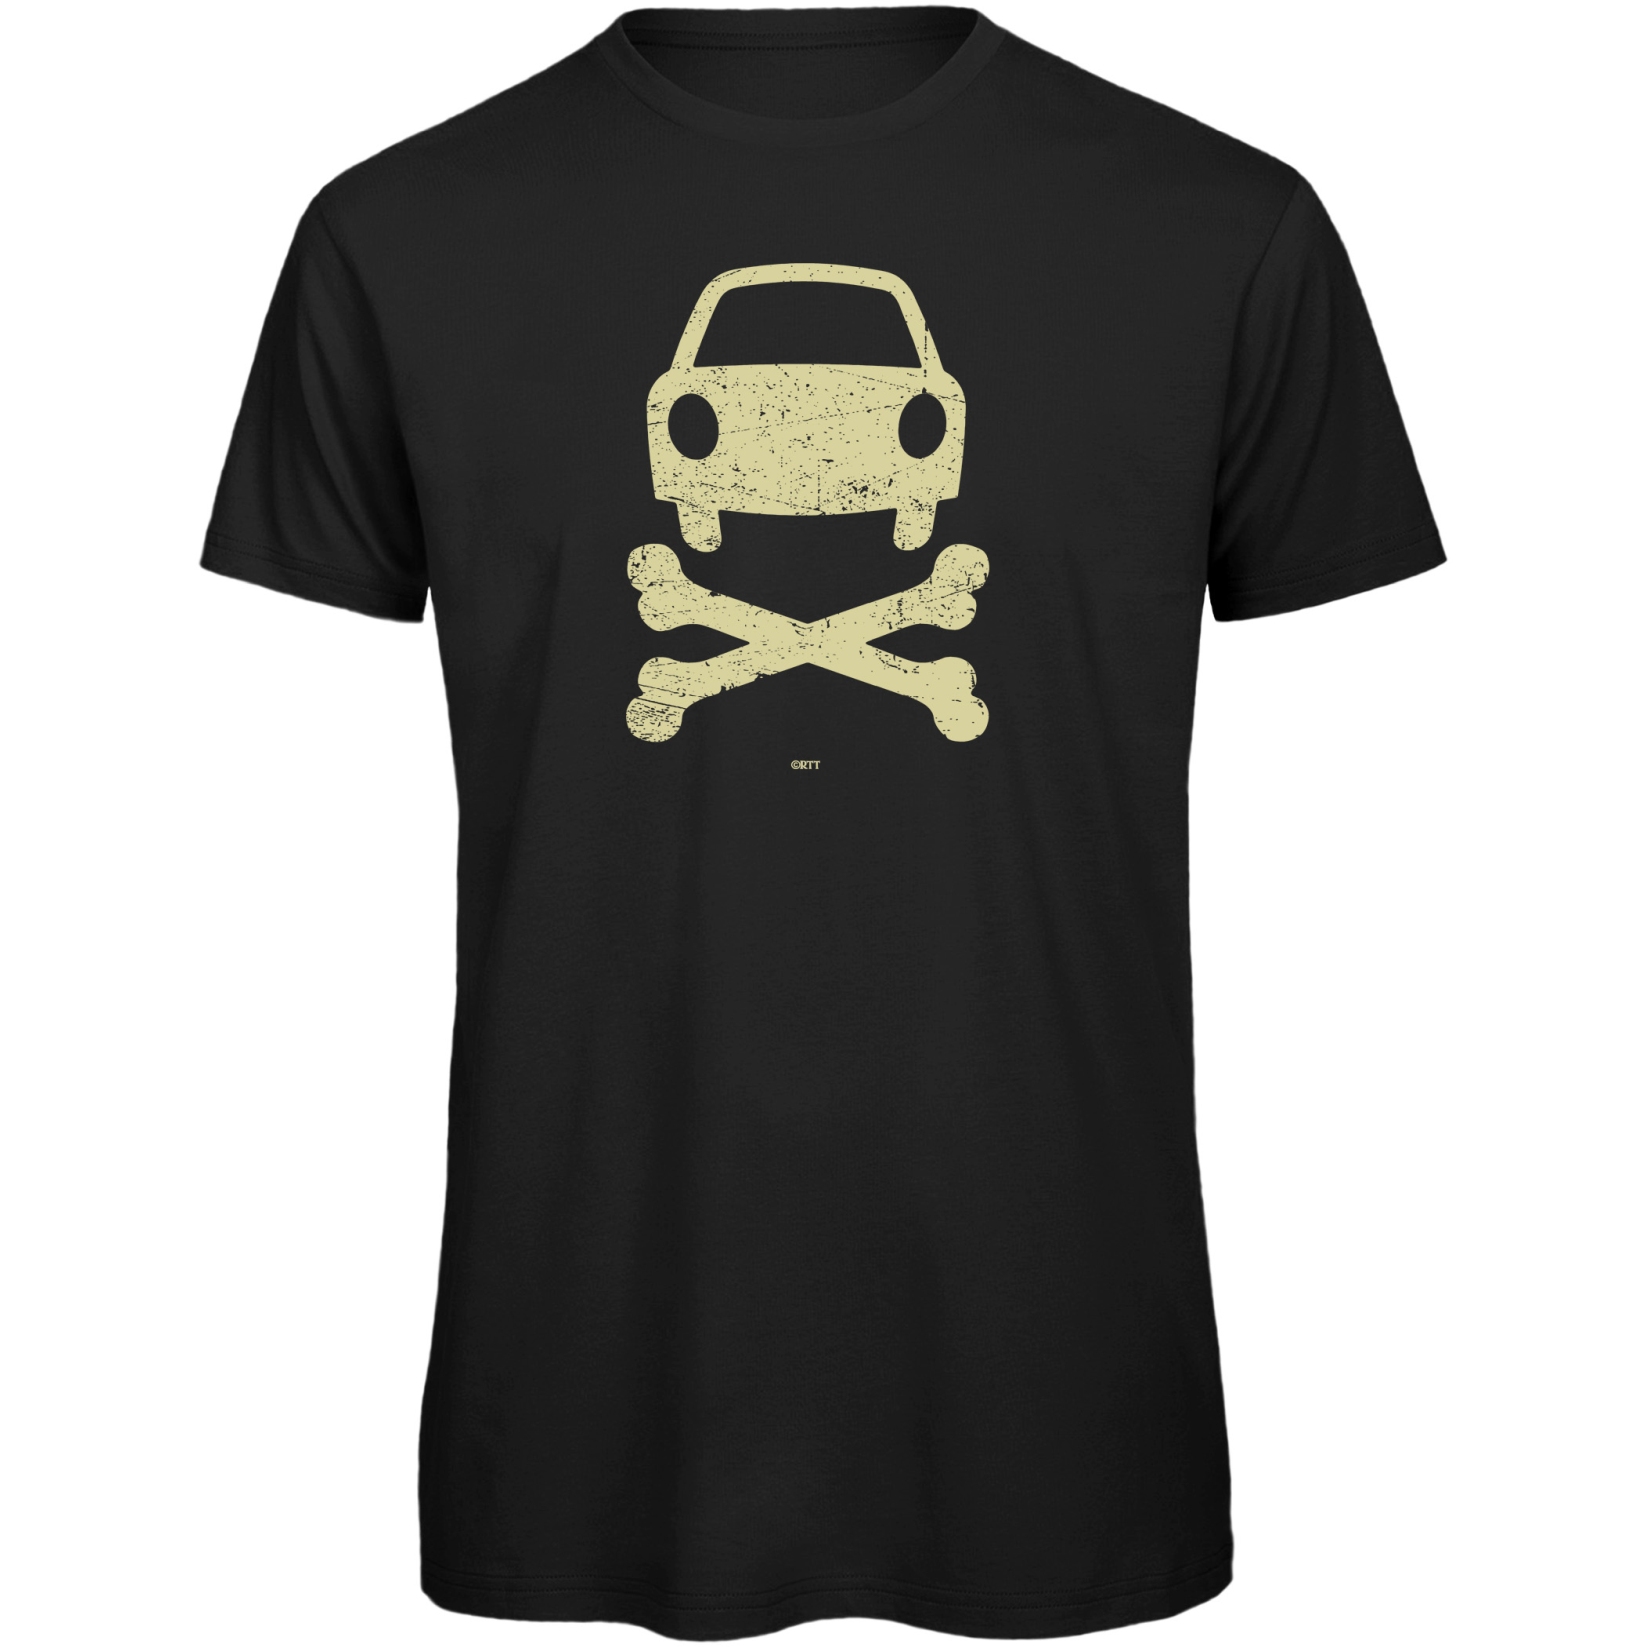 Produktbild von RTTshirts Fahrrad T-Shirt No Car - schwarz